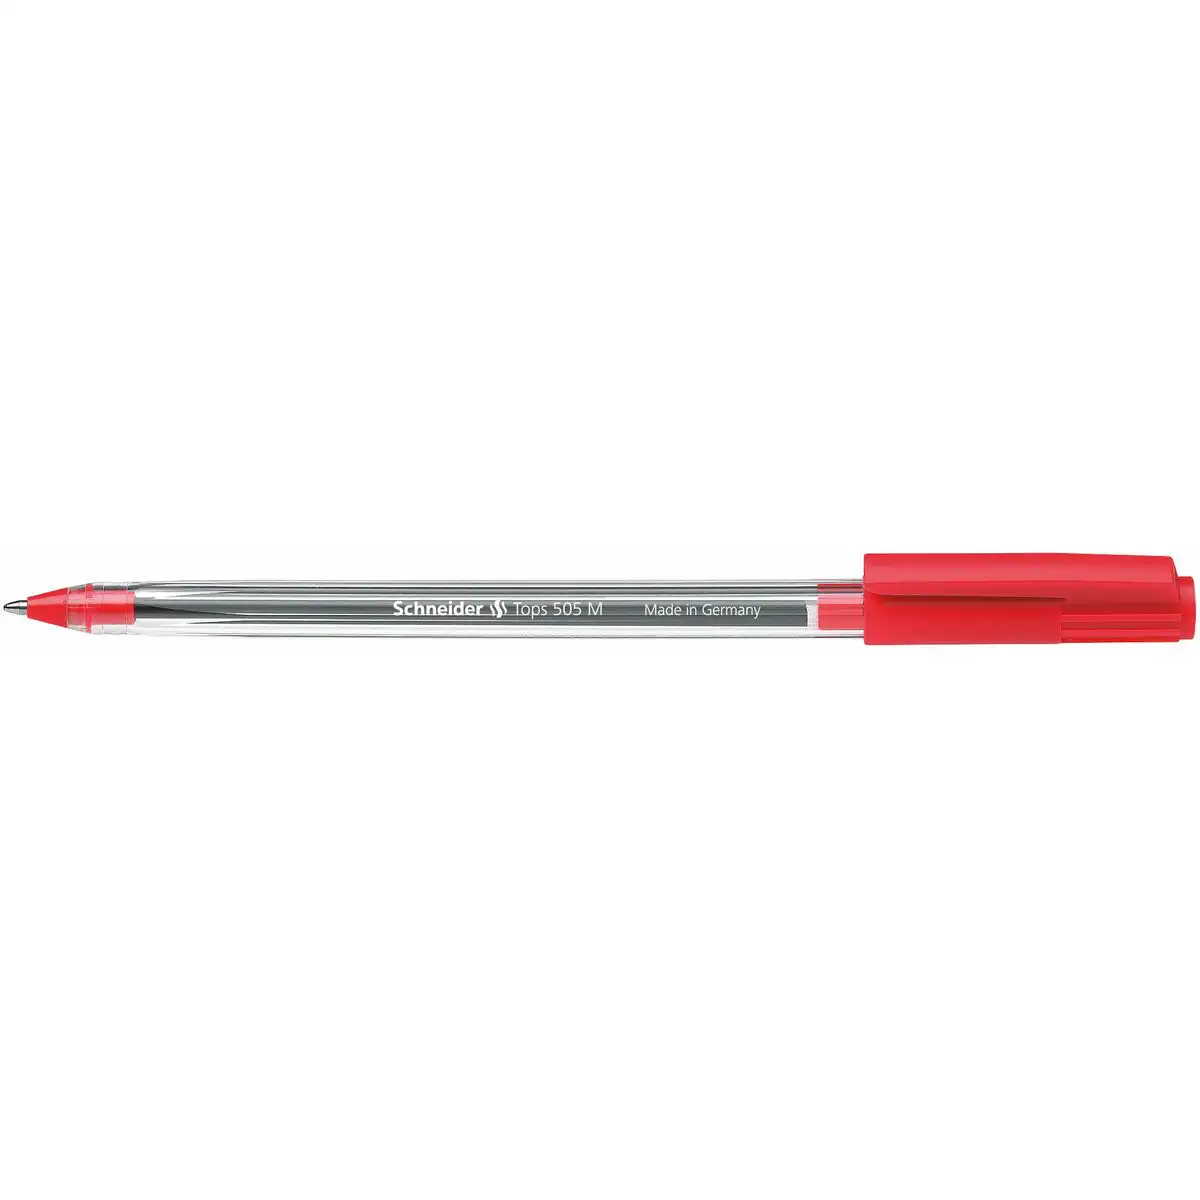 Crayon schneider tops 505 m rouge 50 unites _2819. DIAYTAR SENEGAL - Votre Pass vers la Découverte. Explorez notre boutique en ligne et plongez dans un voyage à travers des produits authentiques et contemporains, tous réunis sous un même toit.